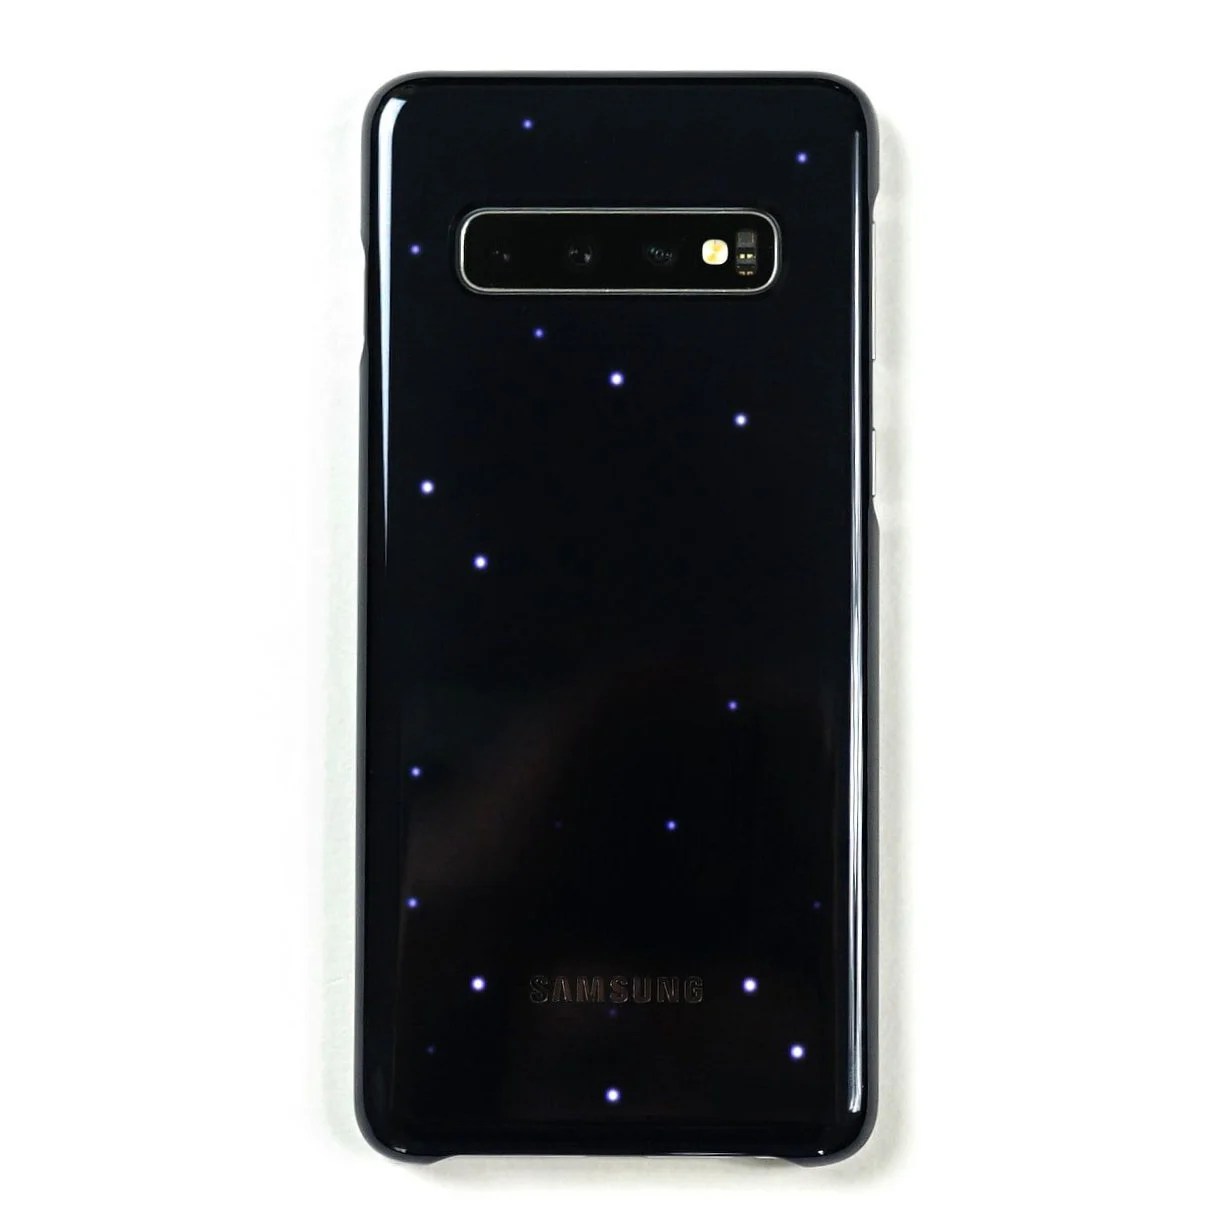 Coques Samsung Galaxy S10 : notre sélection des meilleures protections